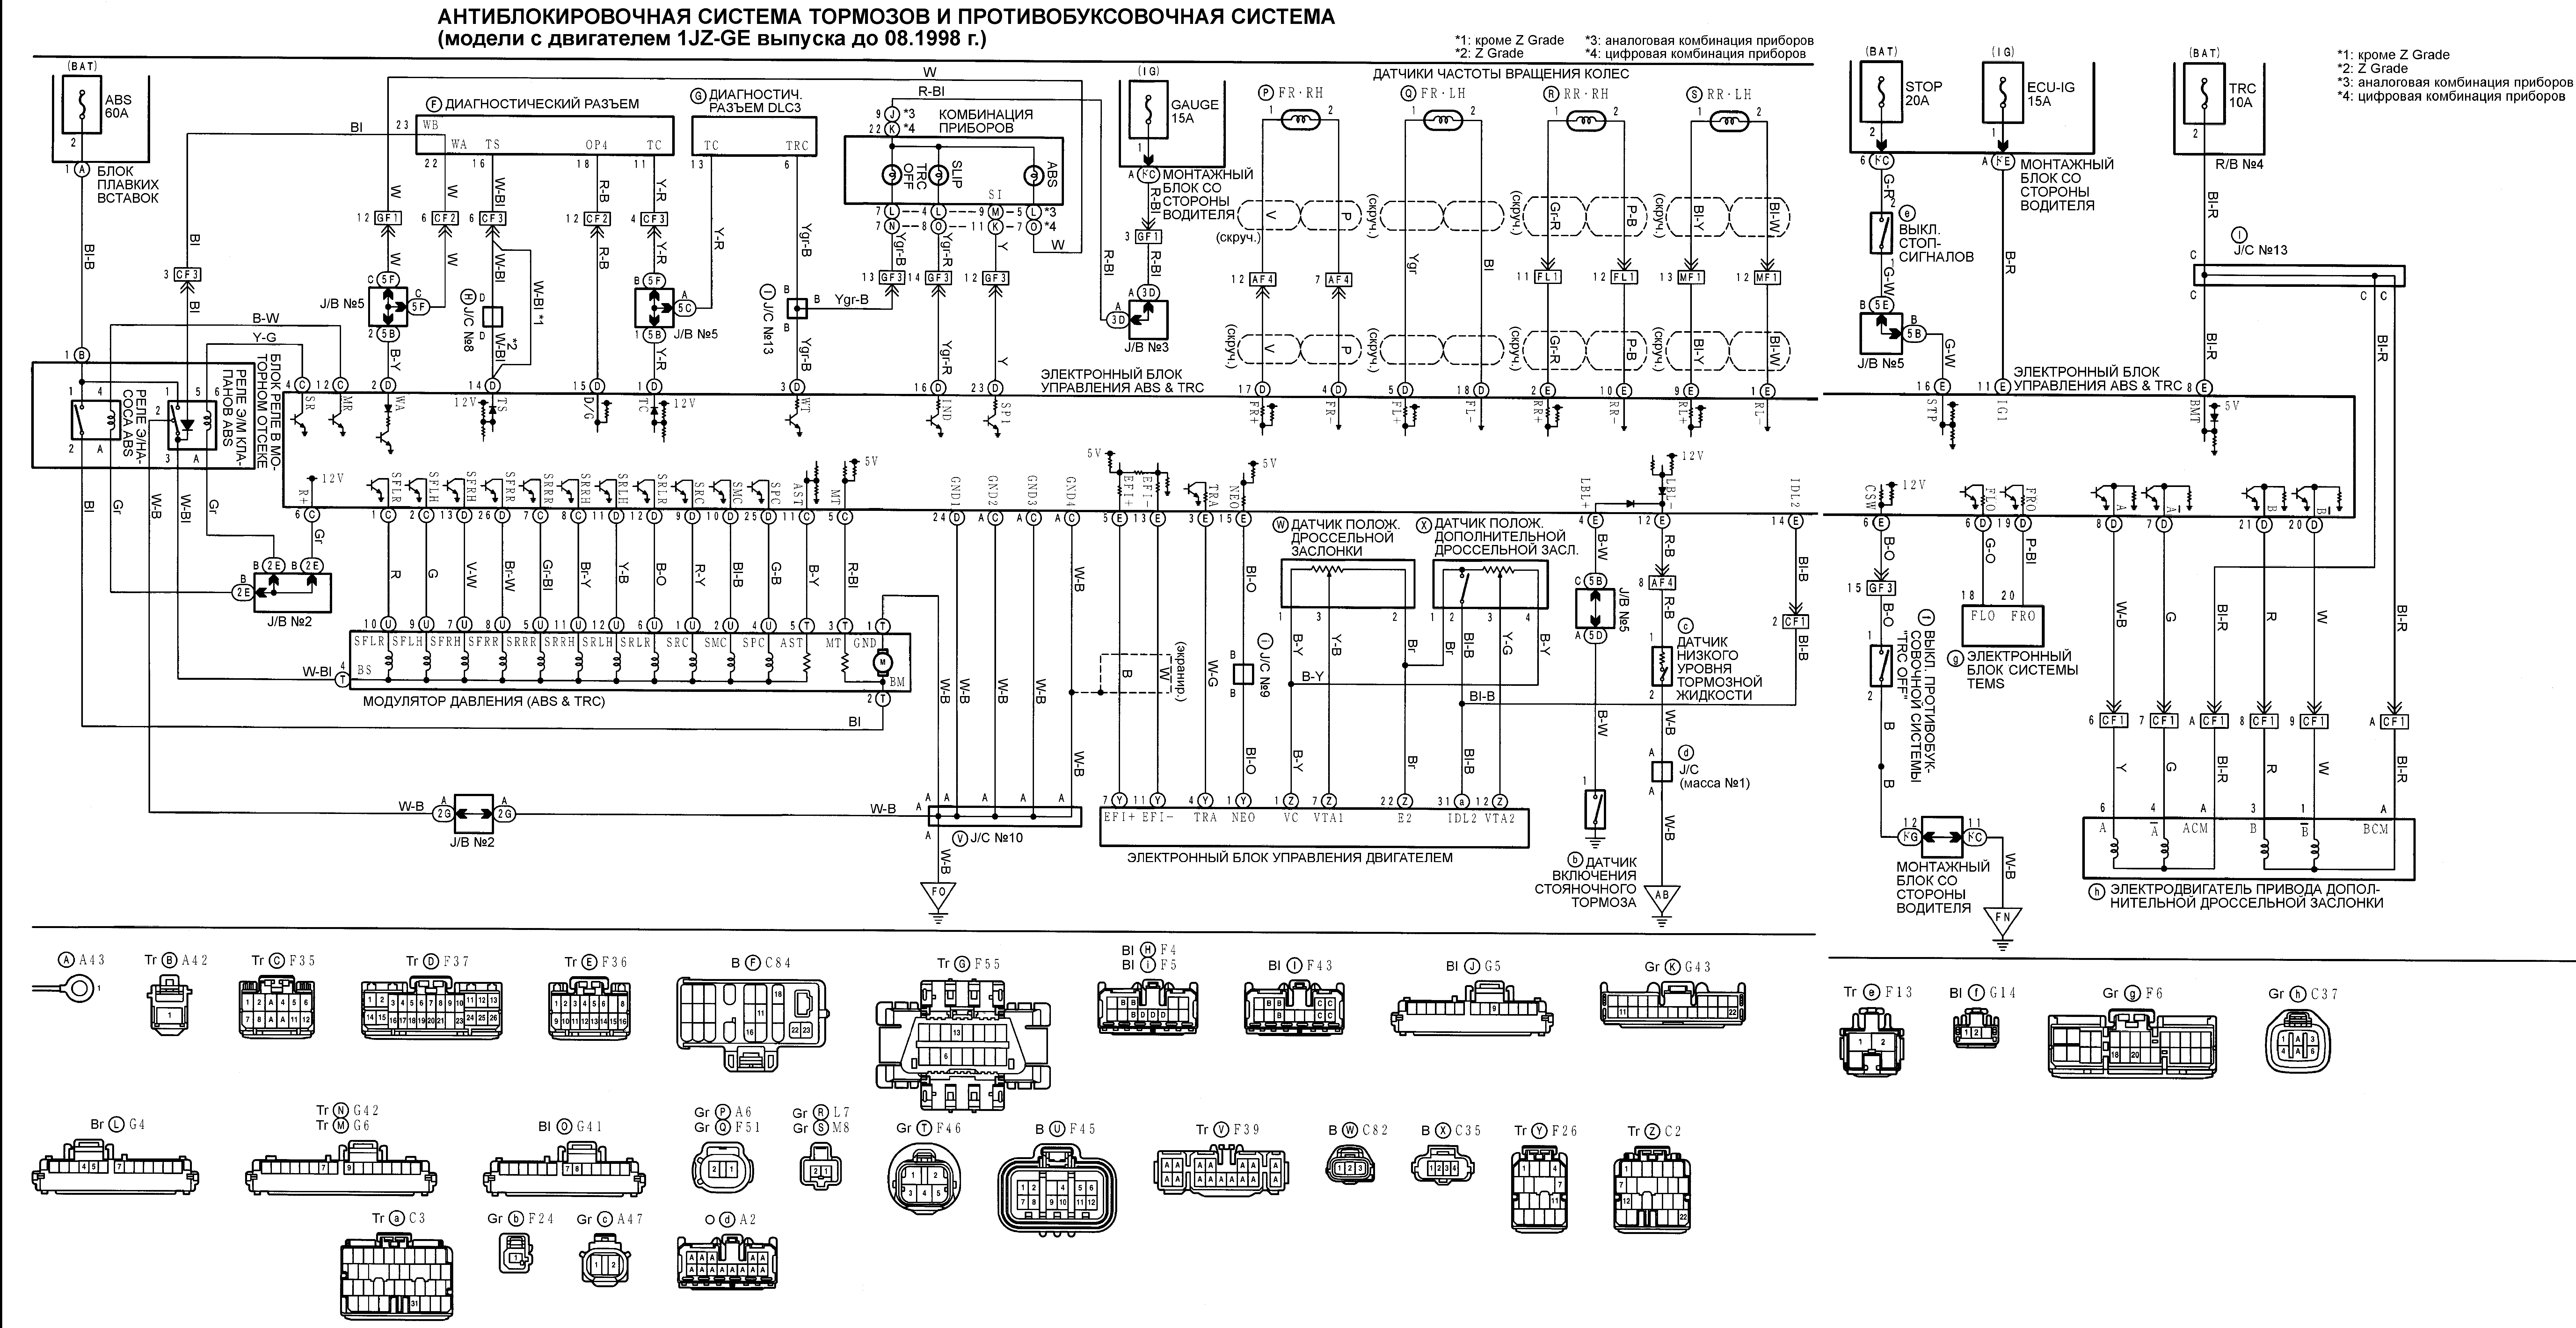 Антиблокировочная система тормозов и противобуксовочная система Toyota MARK II CHASER CRESTA (модели с двигателем 1JZ-GE выпуска до 08.1998)